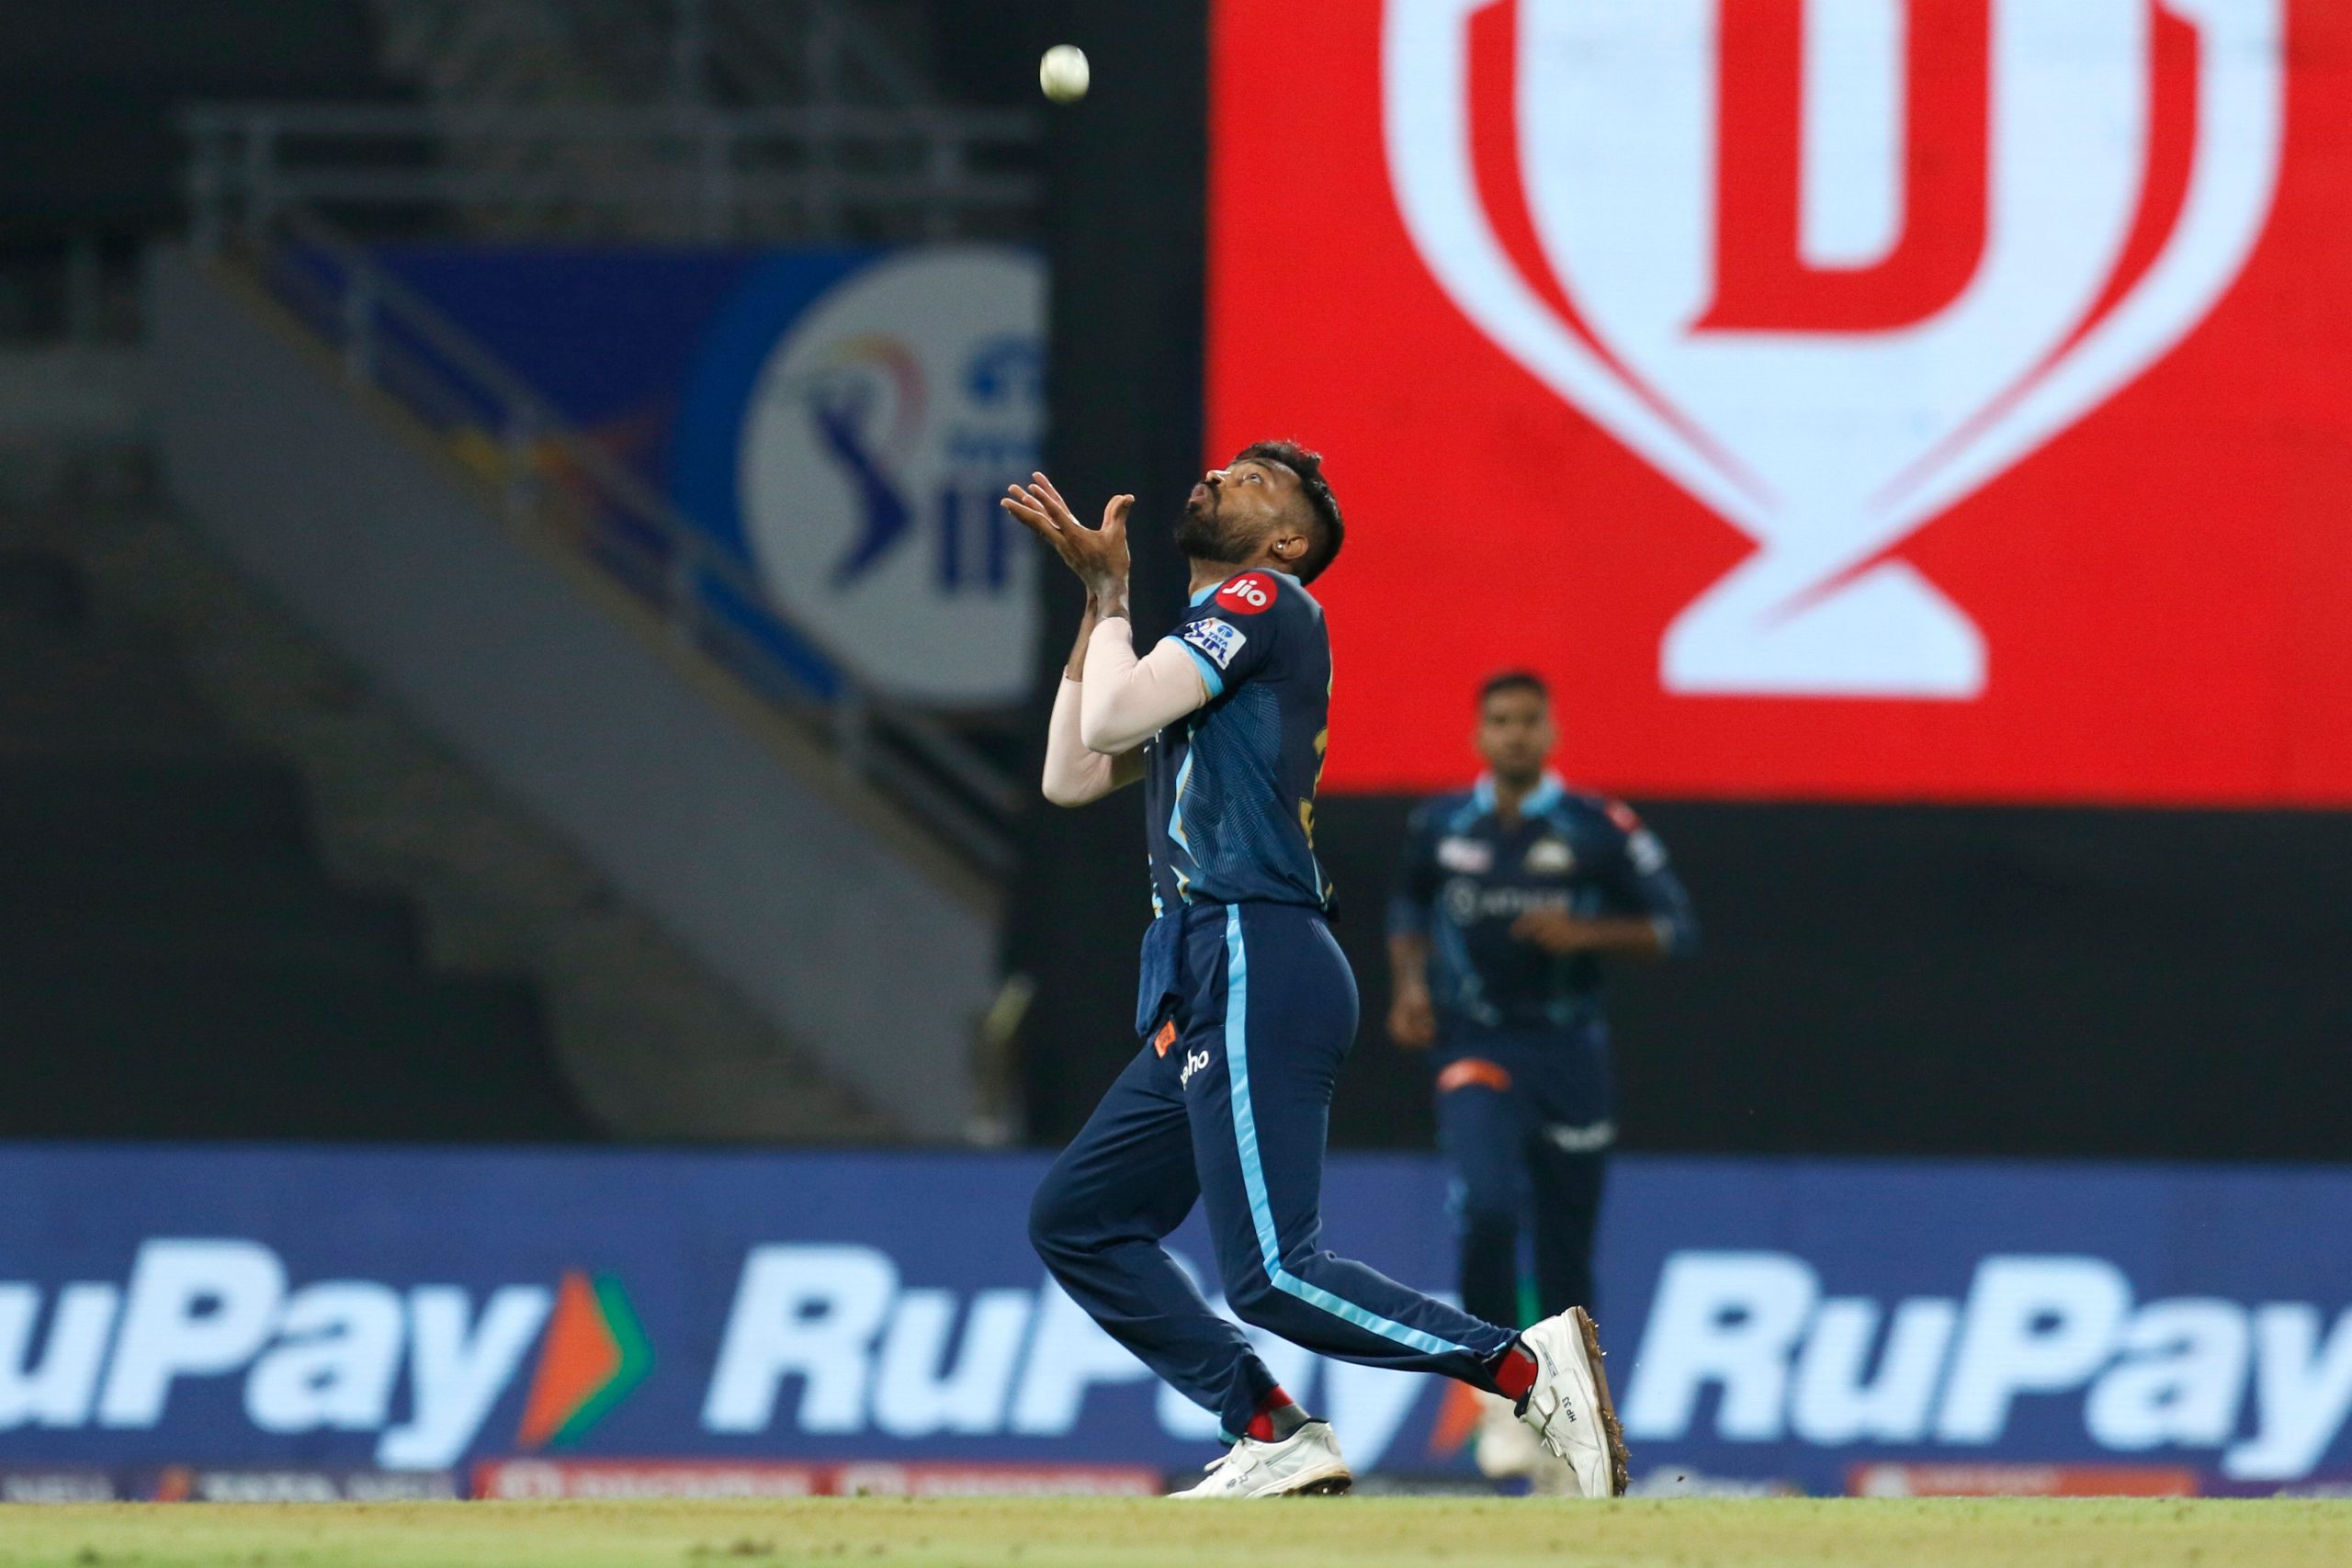 IPL 2022: Gujarat Titans skipper Hardik Pandya explains walking off the field vs Rajasthan Royals